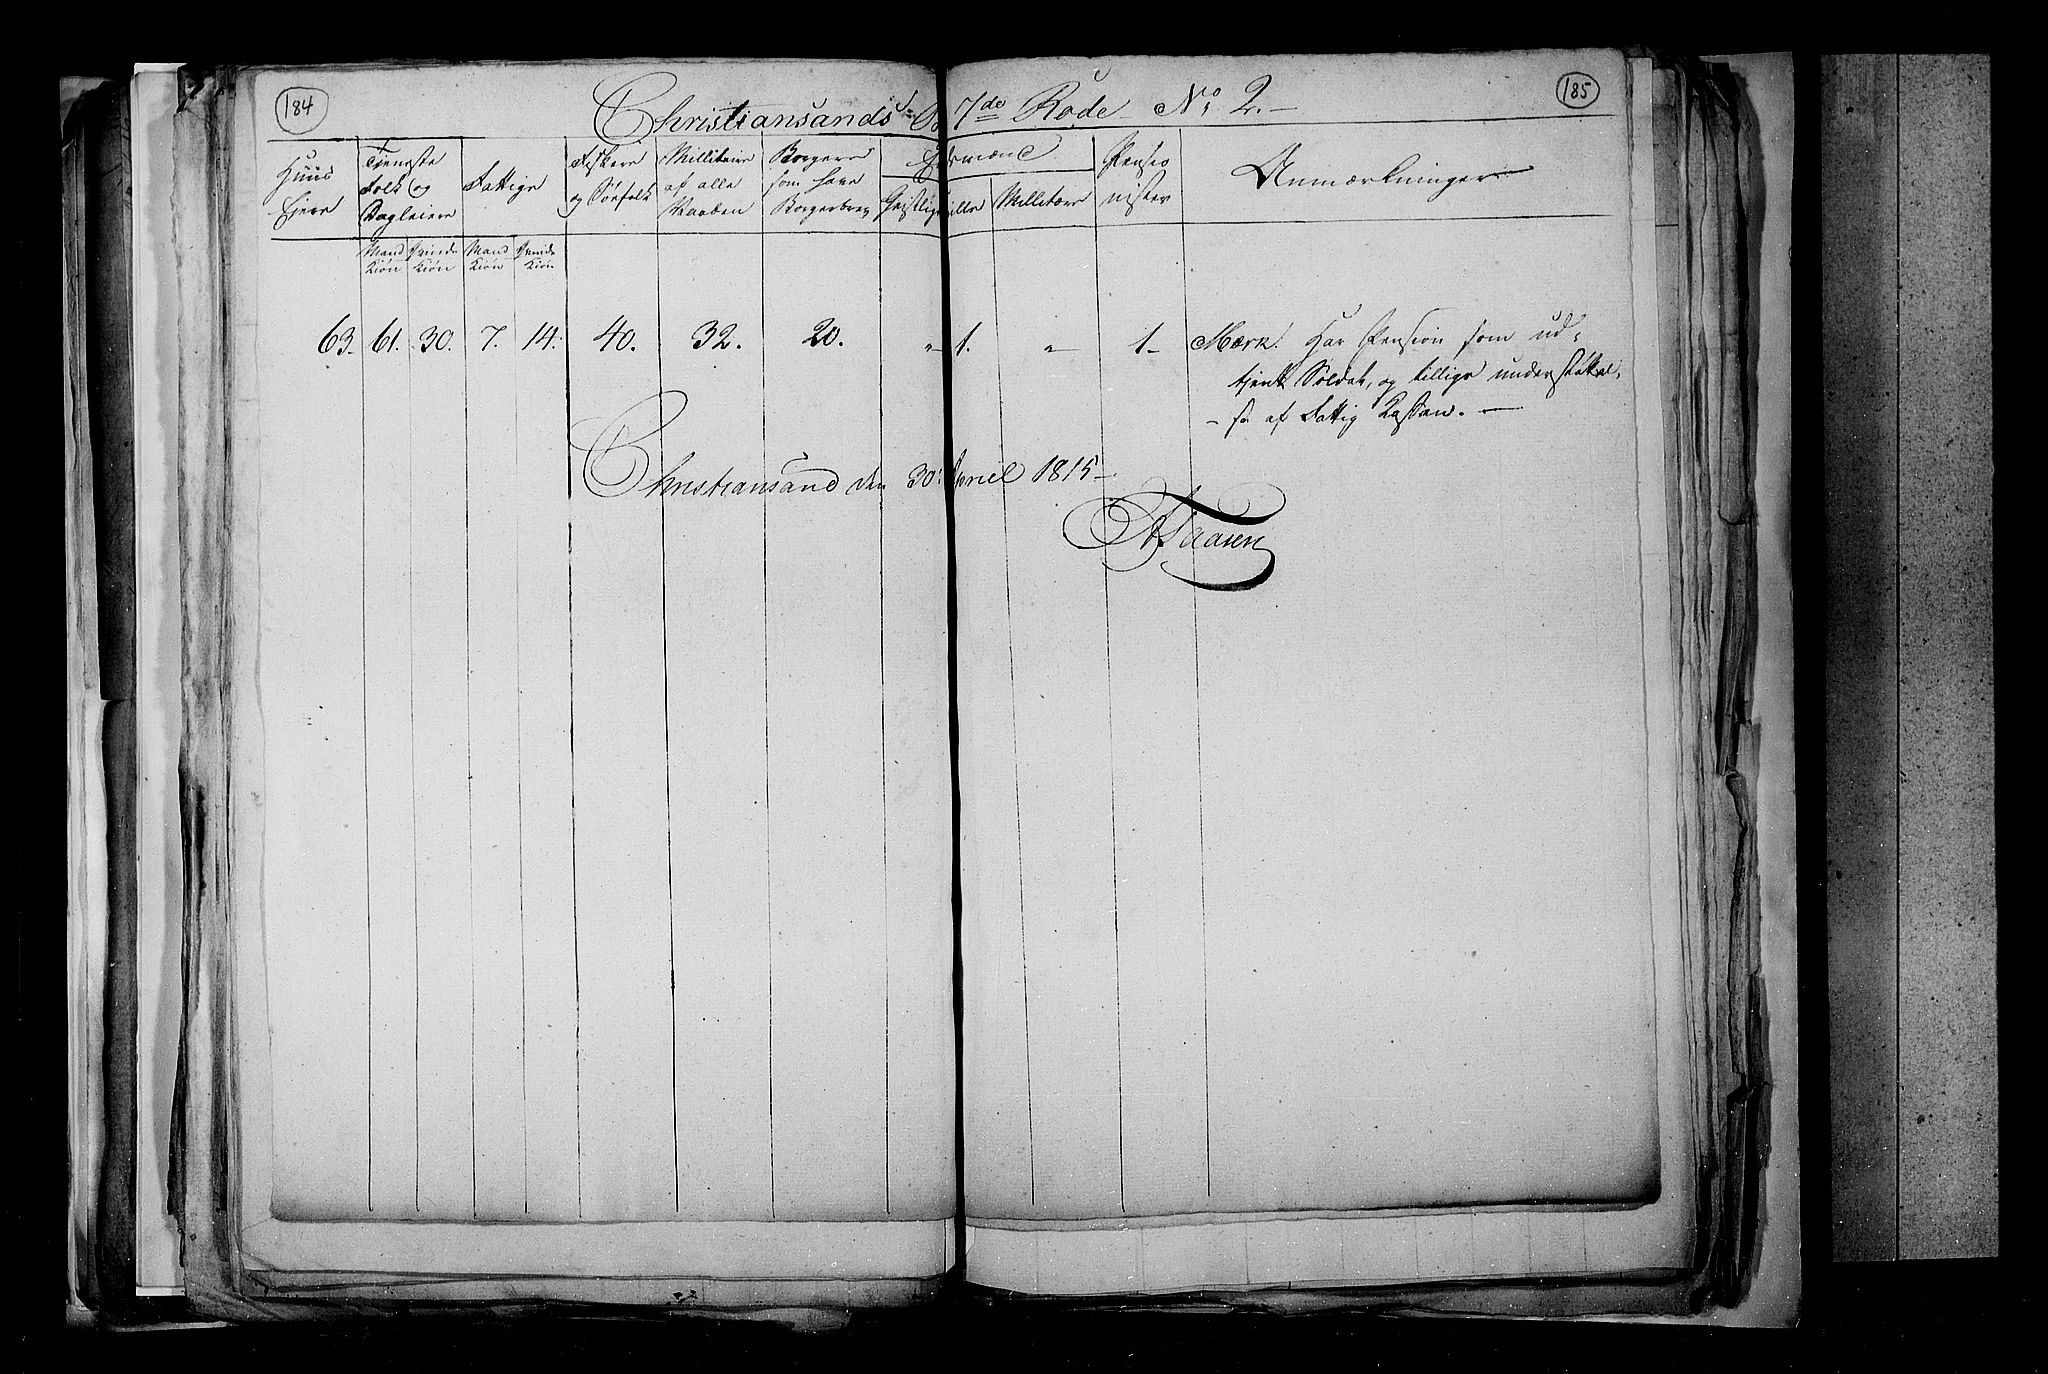 RA, Folketellingen 1815, bind 3: Tromsø stift og byene, 1815, s. 124